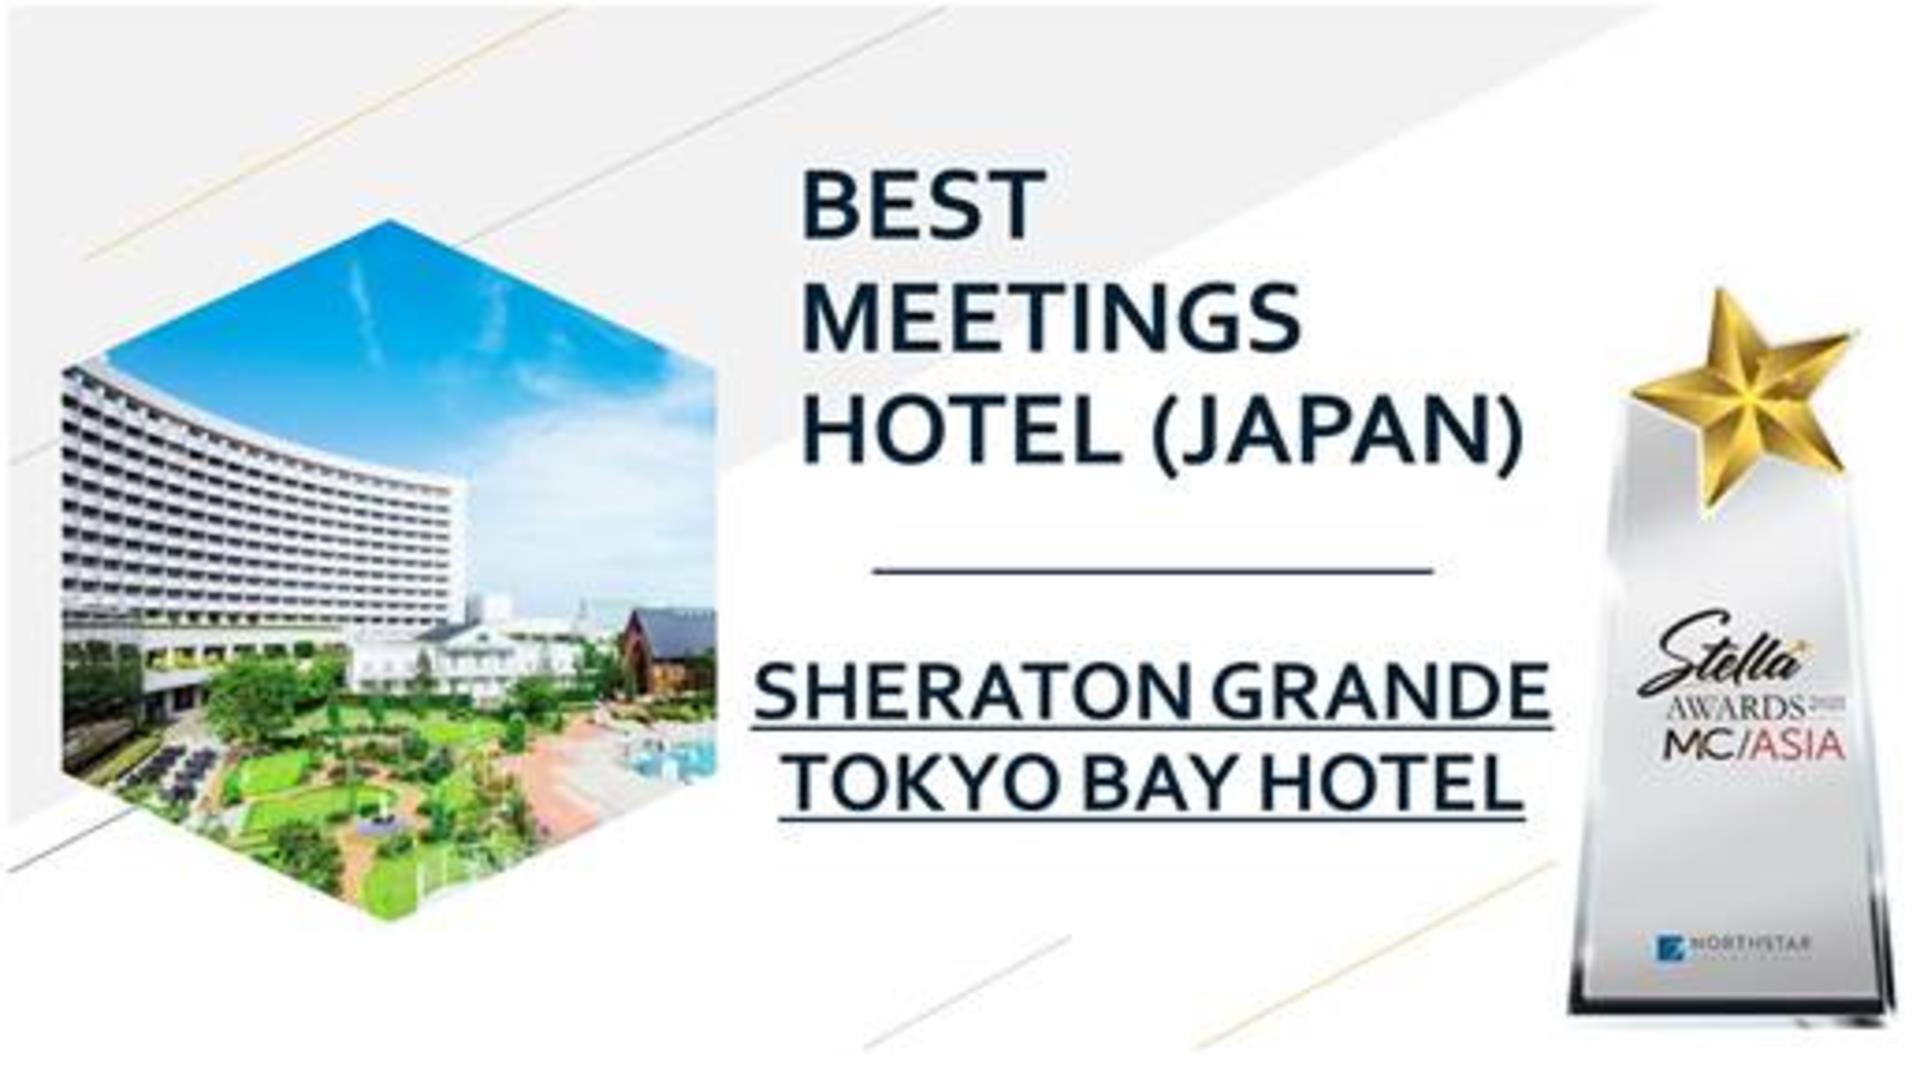 Sheraton Grande Tokyo Bay Hotel in Urayasu, JP